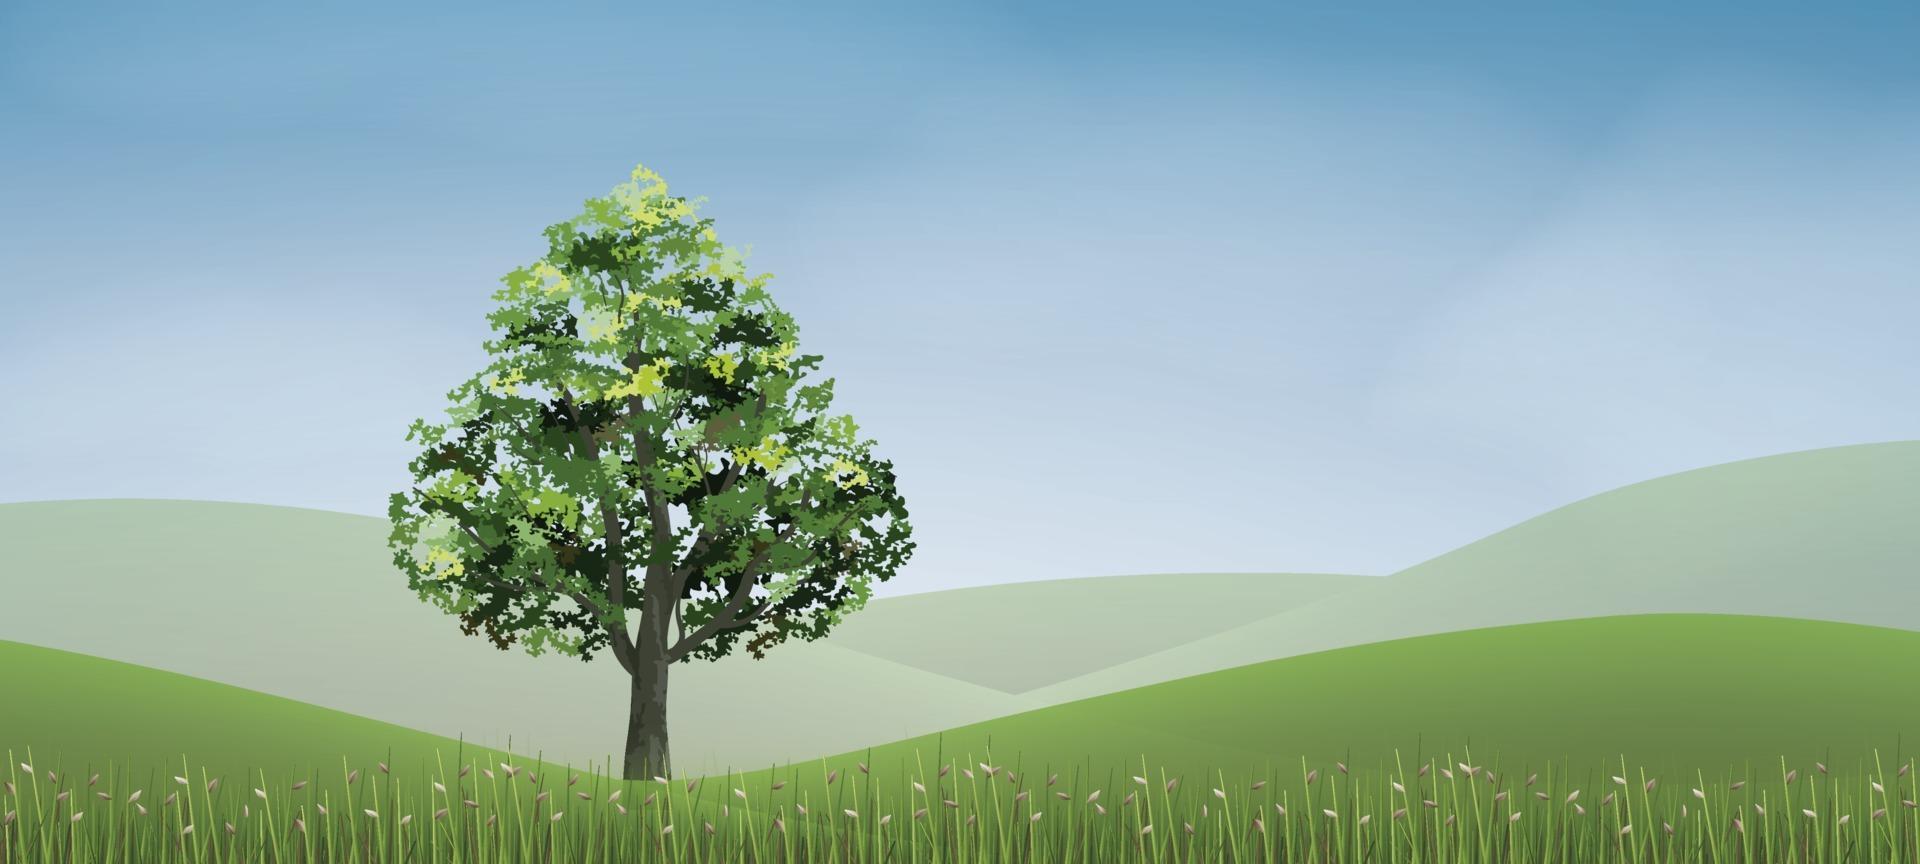 träd i grönt gräsbackområde med blå himmel. vektor. vektor